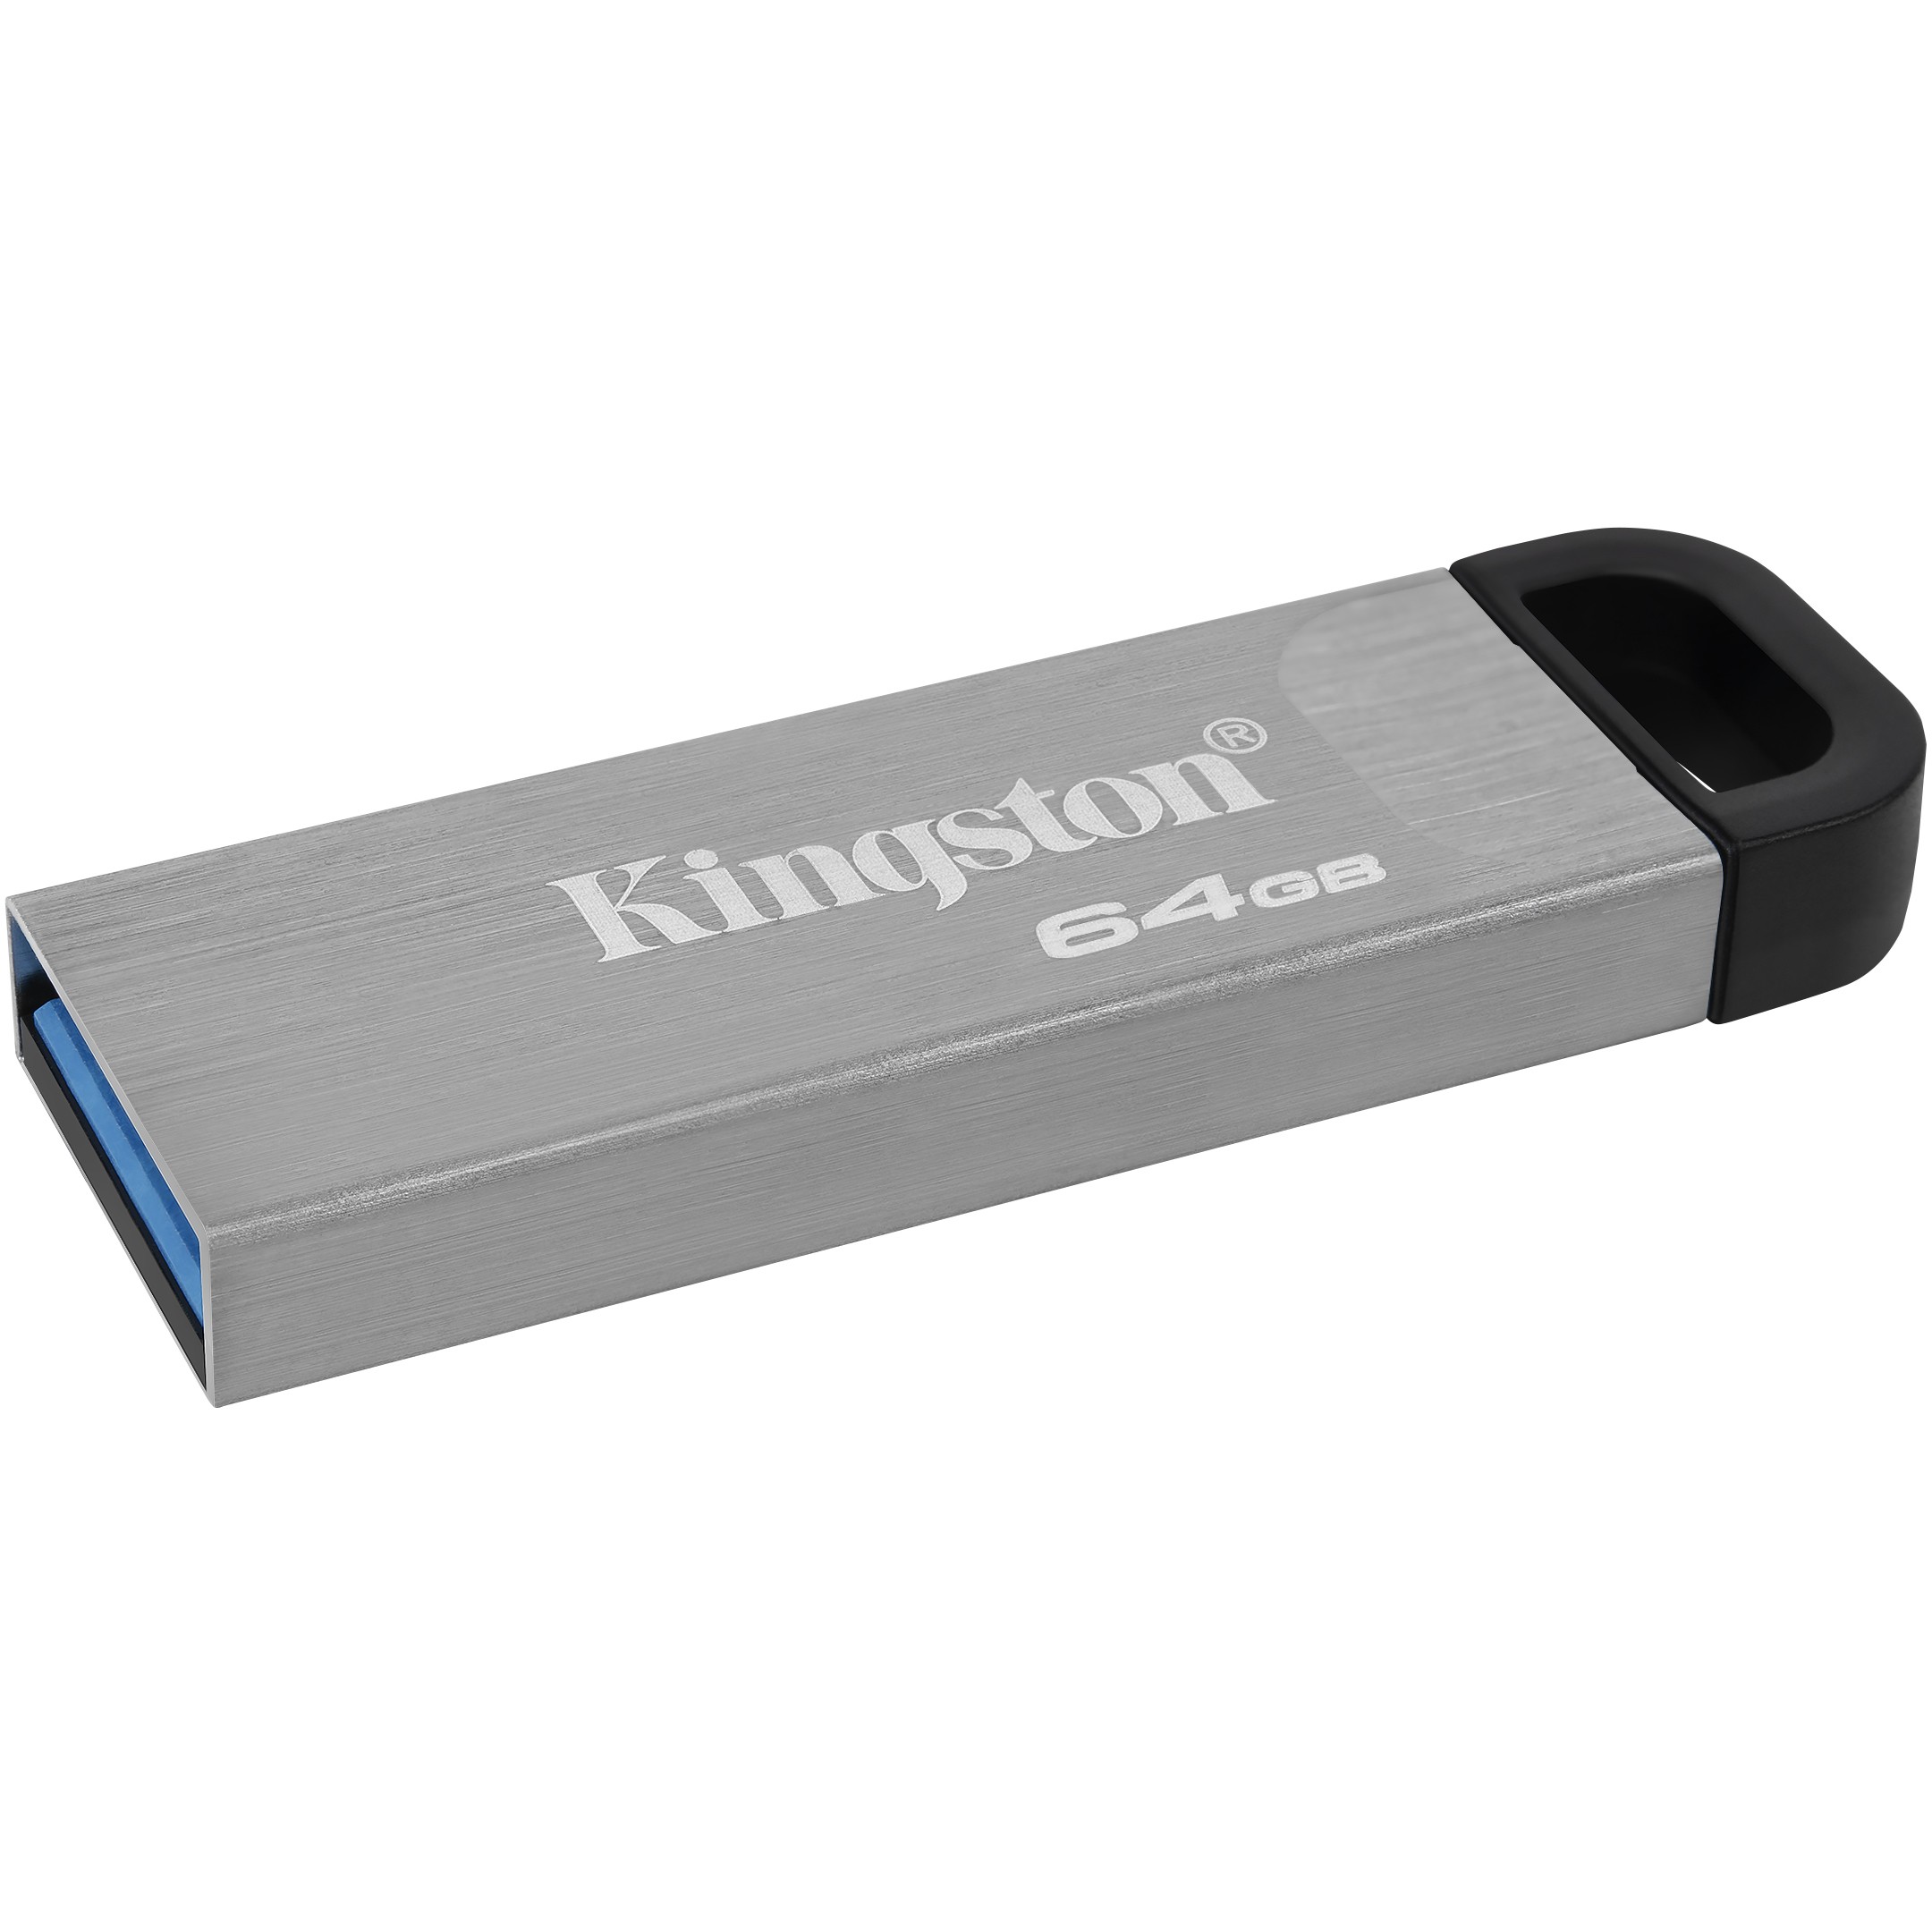 Kingston DTKN/64GB, USB-Sticks, Kingston Technology USB  (BILD3)